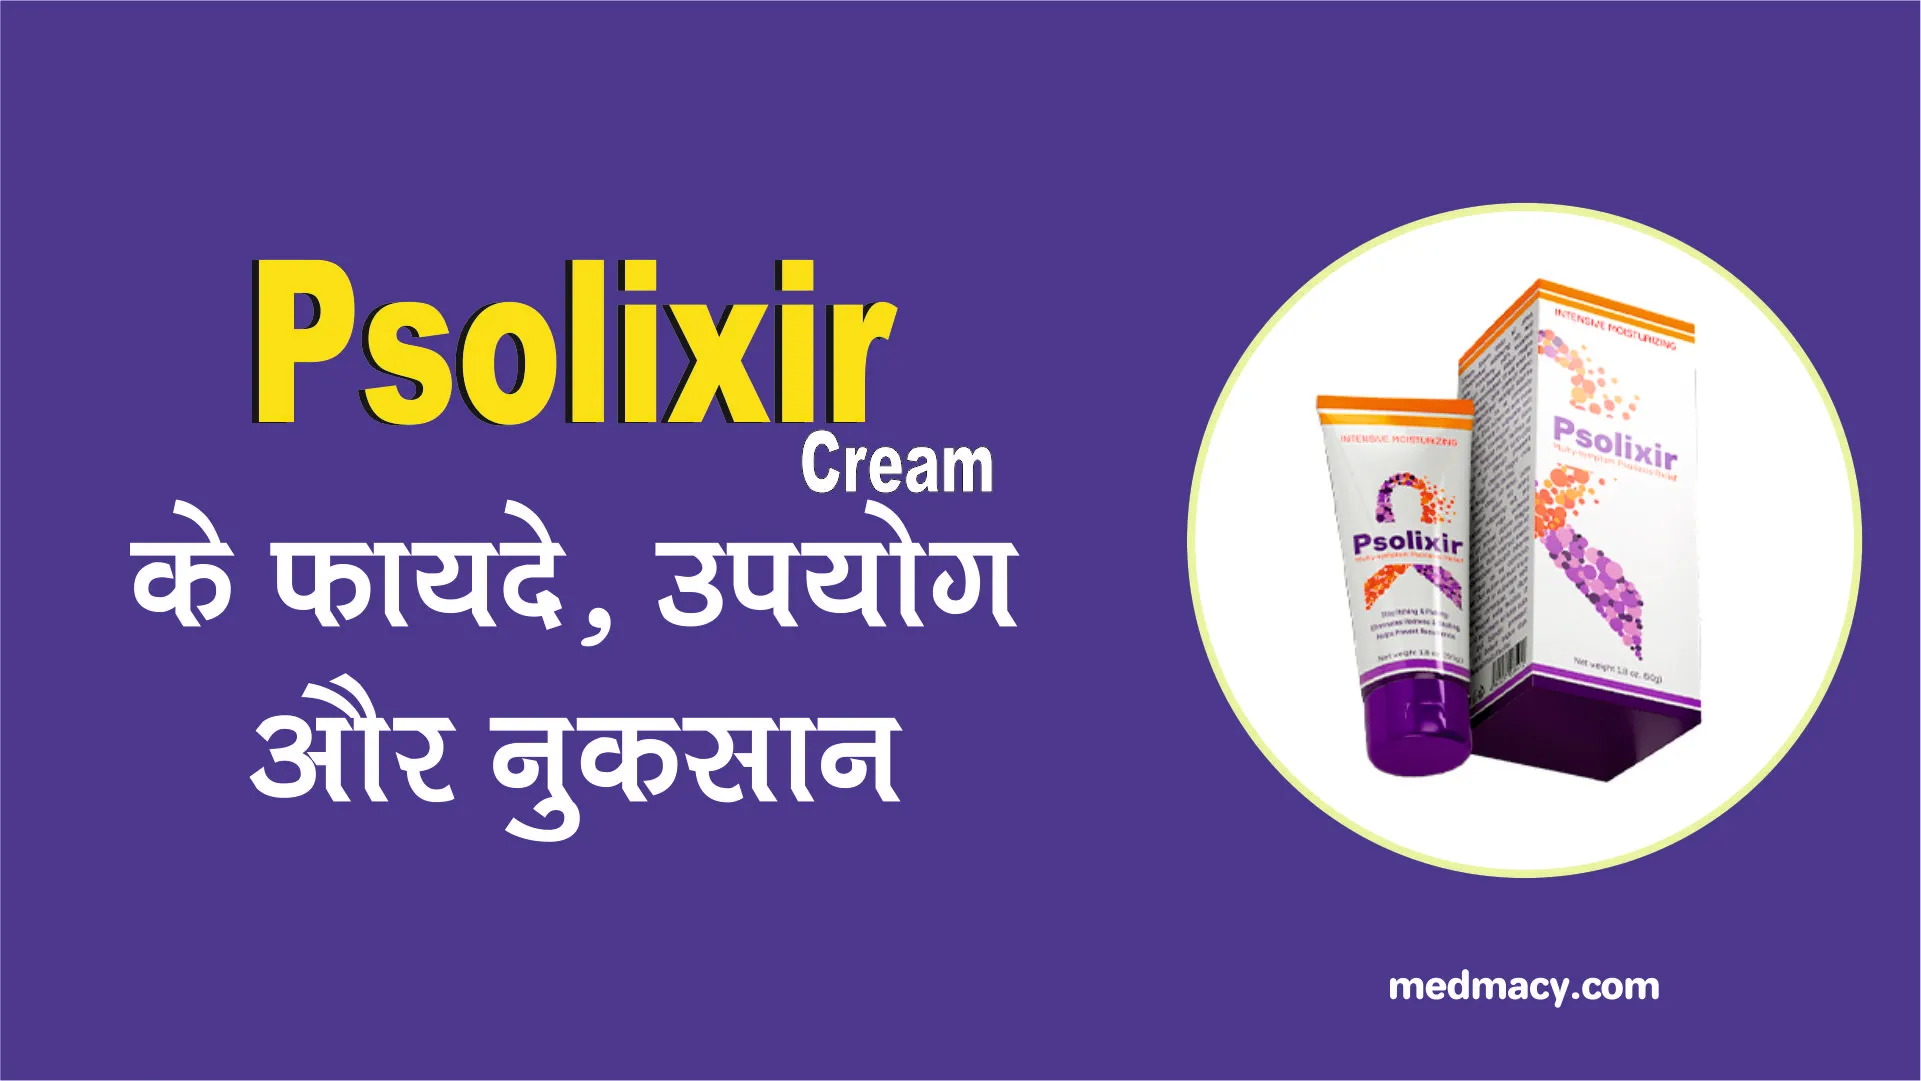 Psolixir Cream Benefits in Hindi